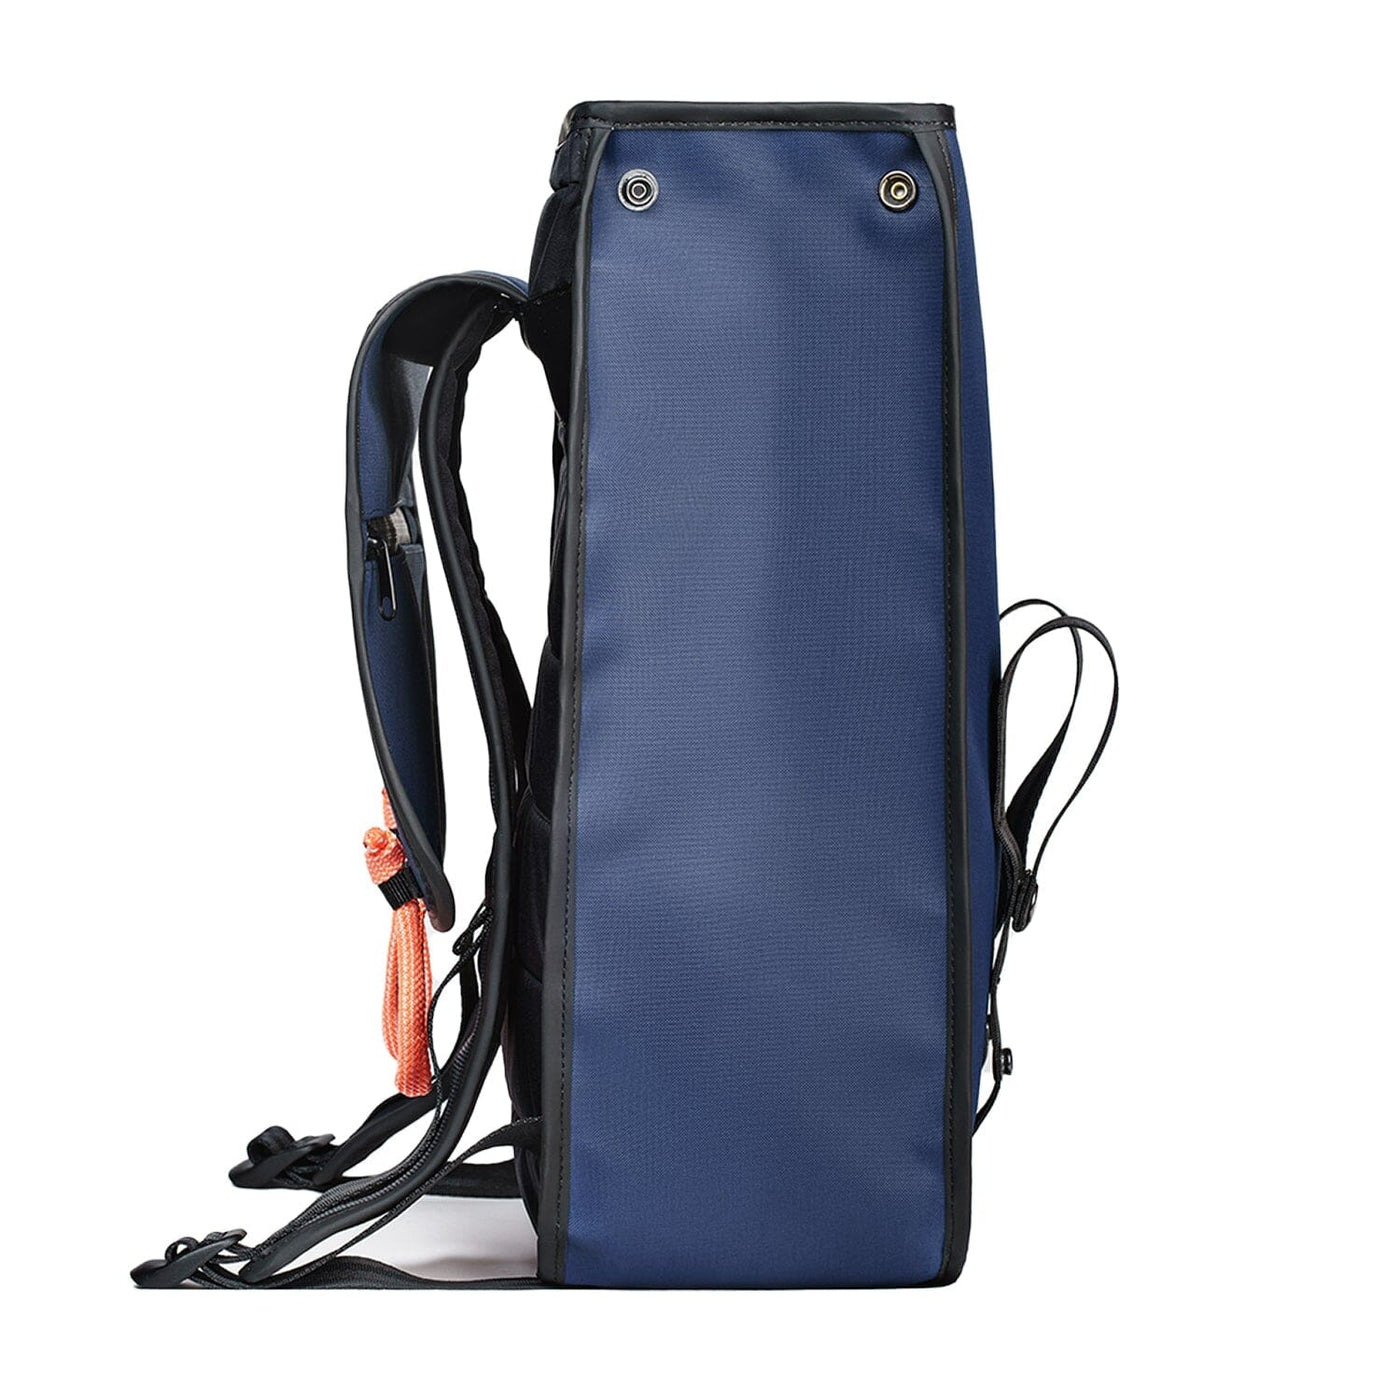 waterproof sustainable backpack roomy storage